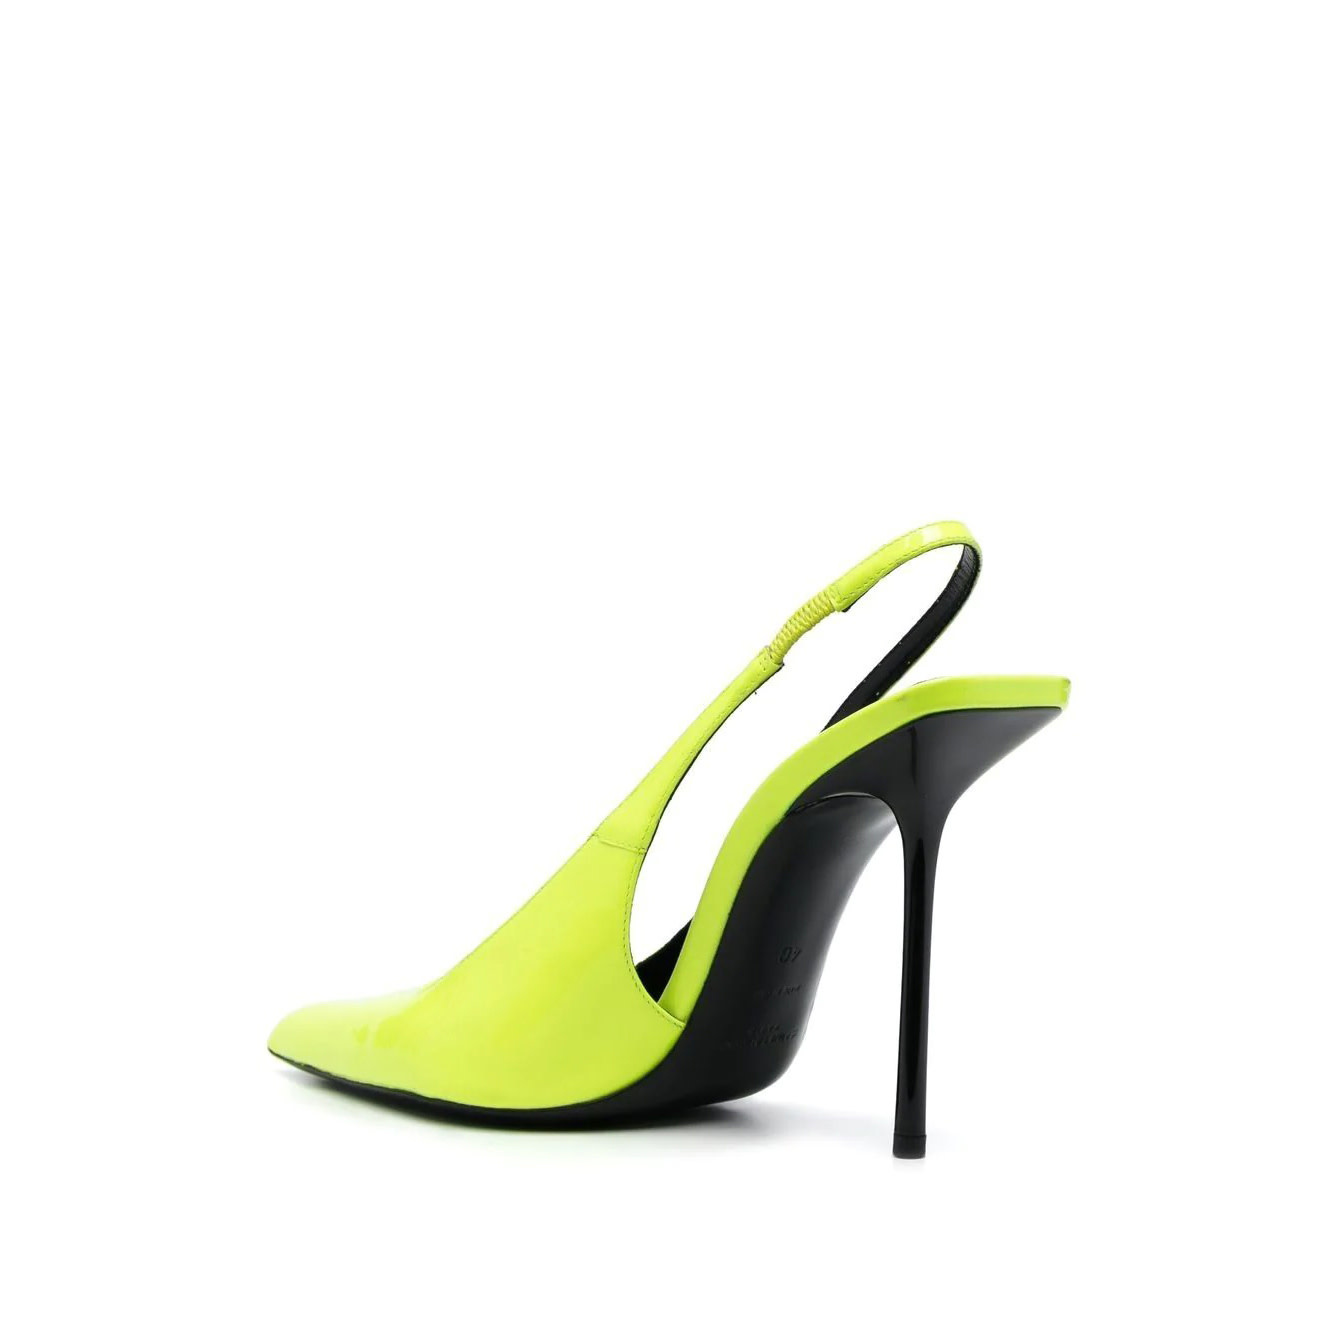 Buy Lemon Yellow Heeled Sandals for Women by Sneak-a-Peek Online | Ajio.com